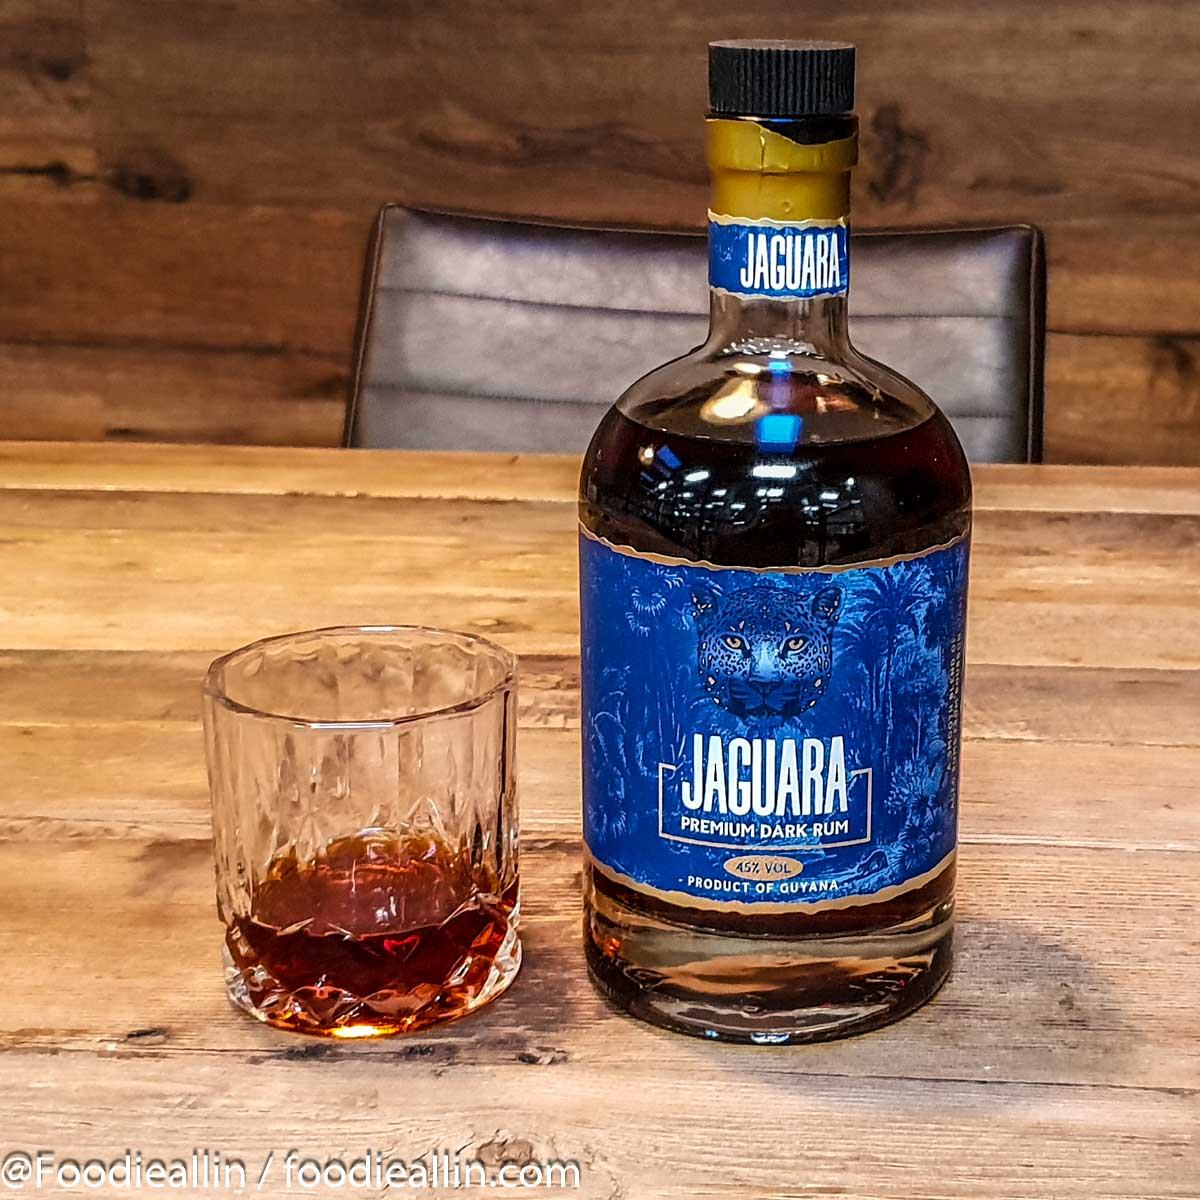 Jaguara rum